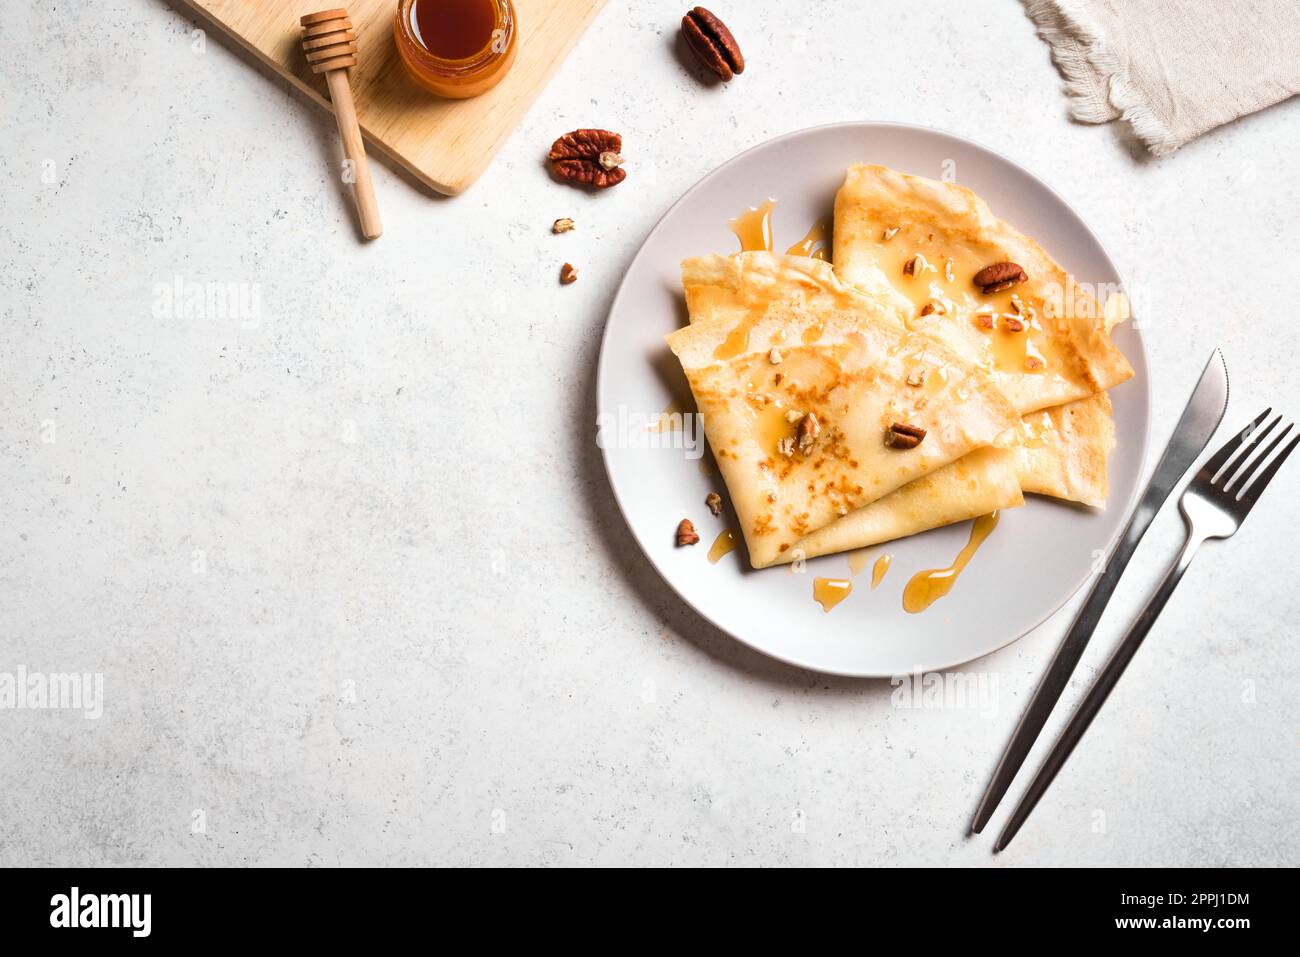 Crepes Suzette con miel y nueces de pacana sobre fondo blanco. Deliciosos crepes caseros para el desayuno. Foto de stock